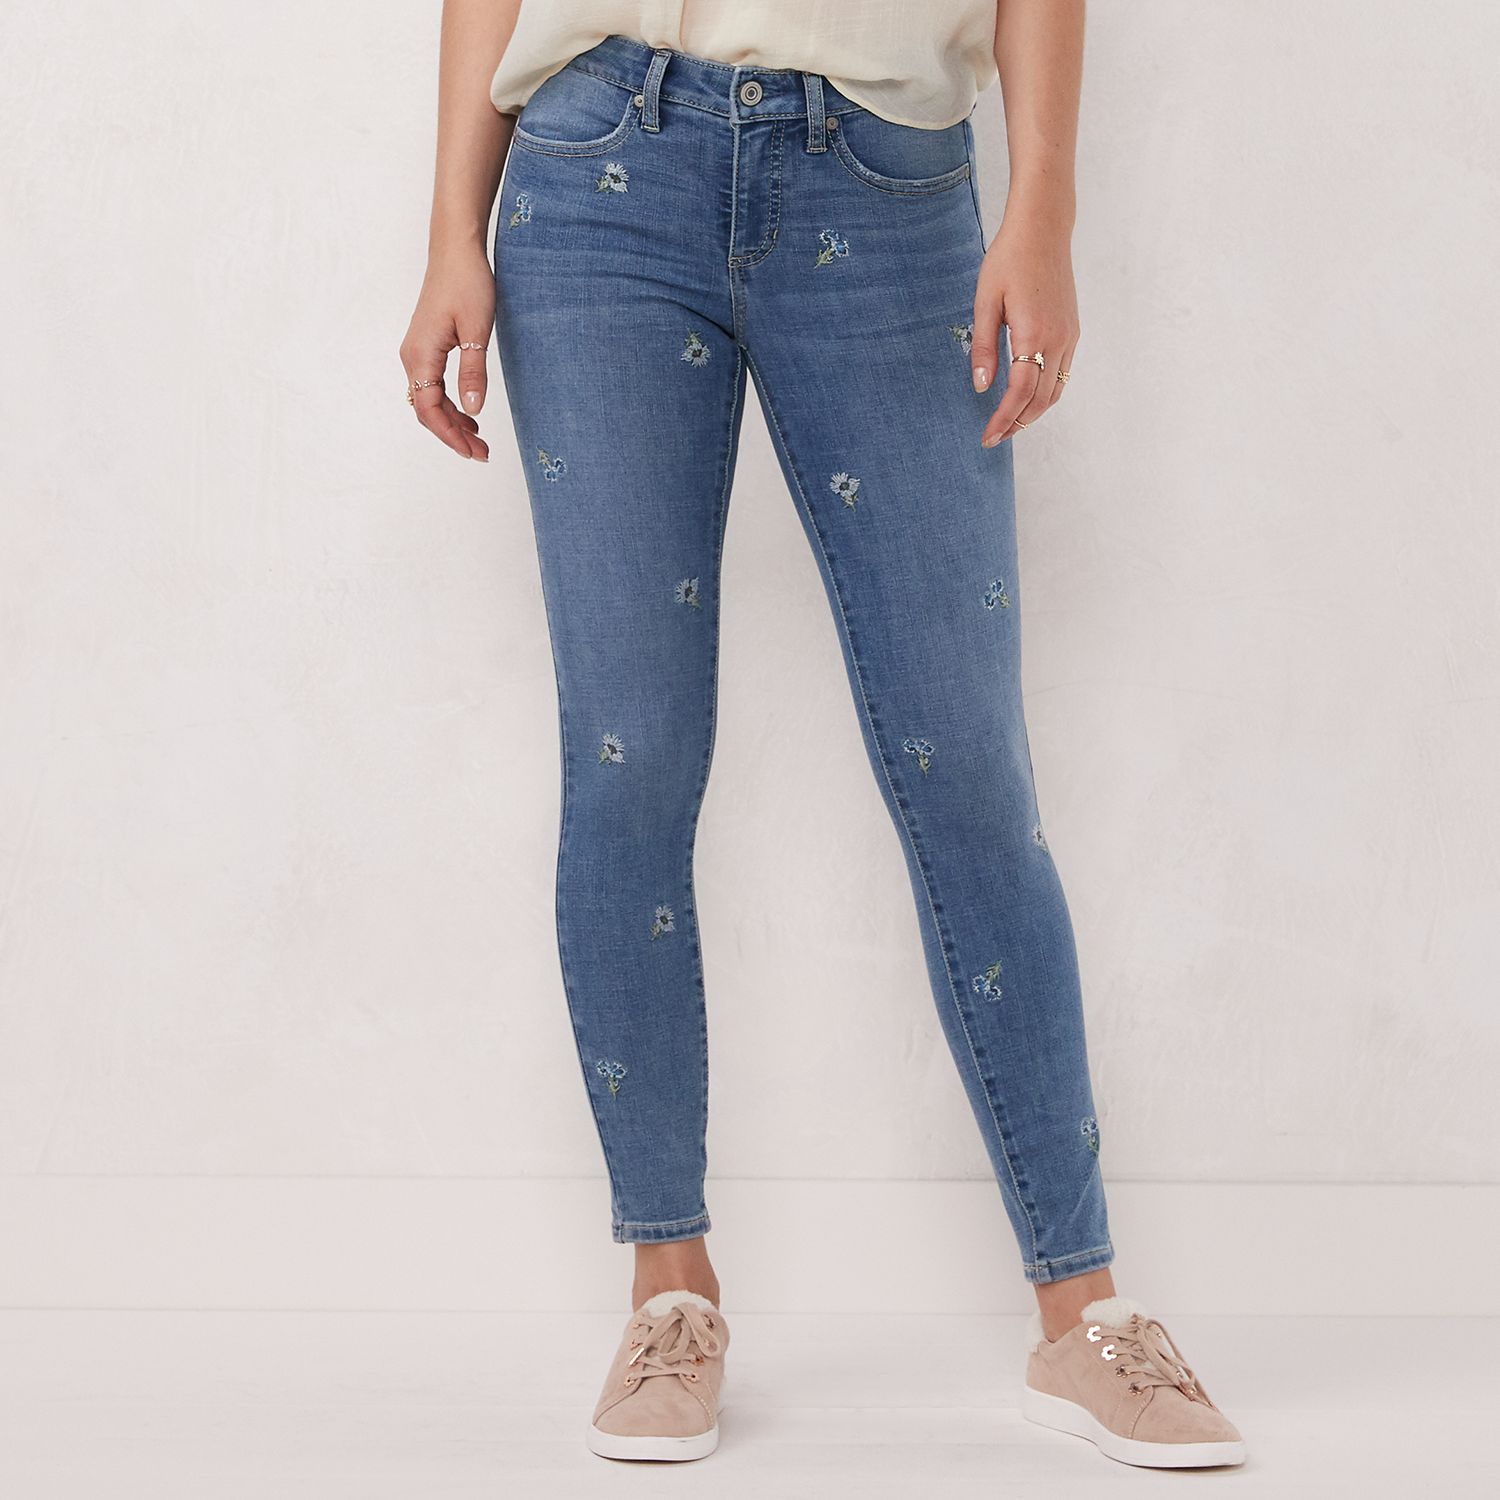 lauren conrad feel good jeans